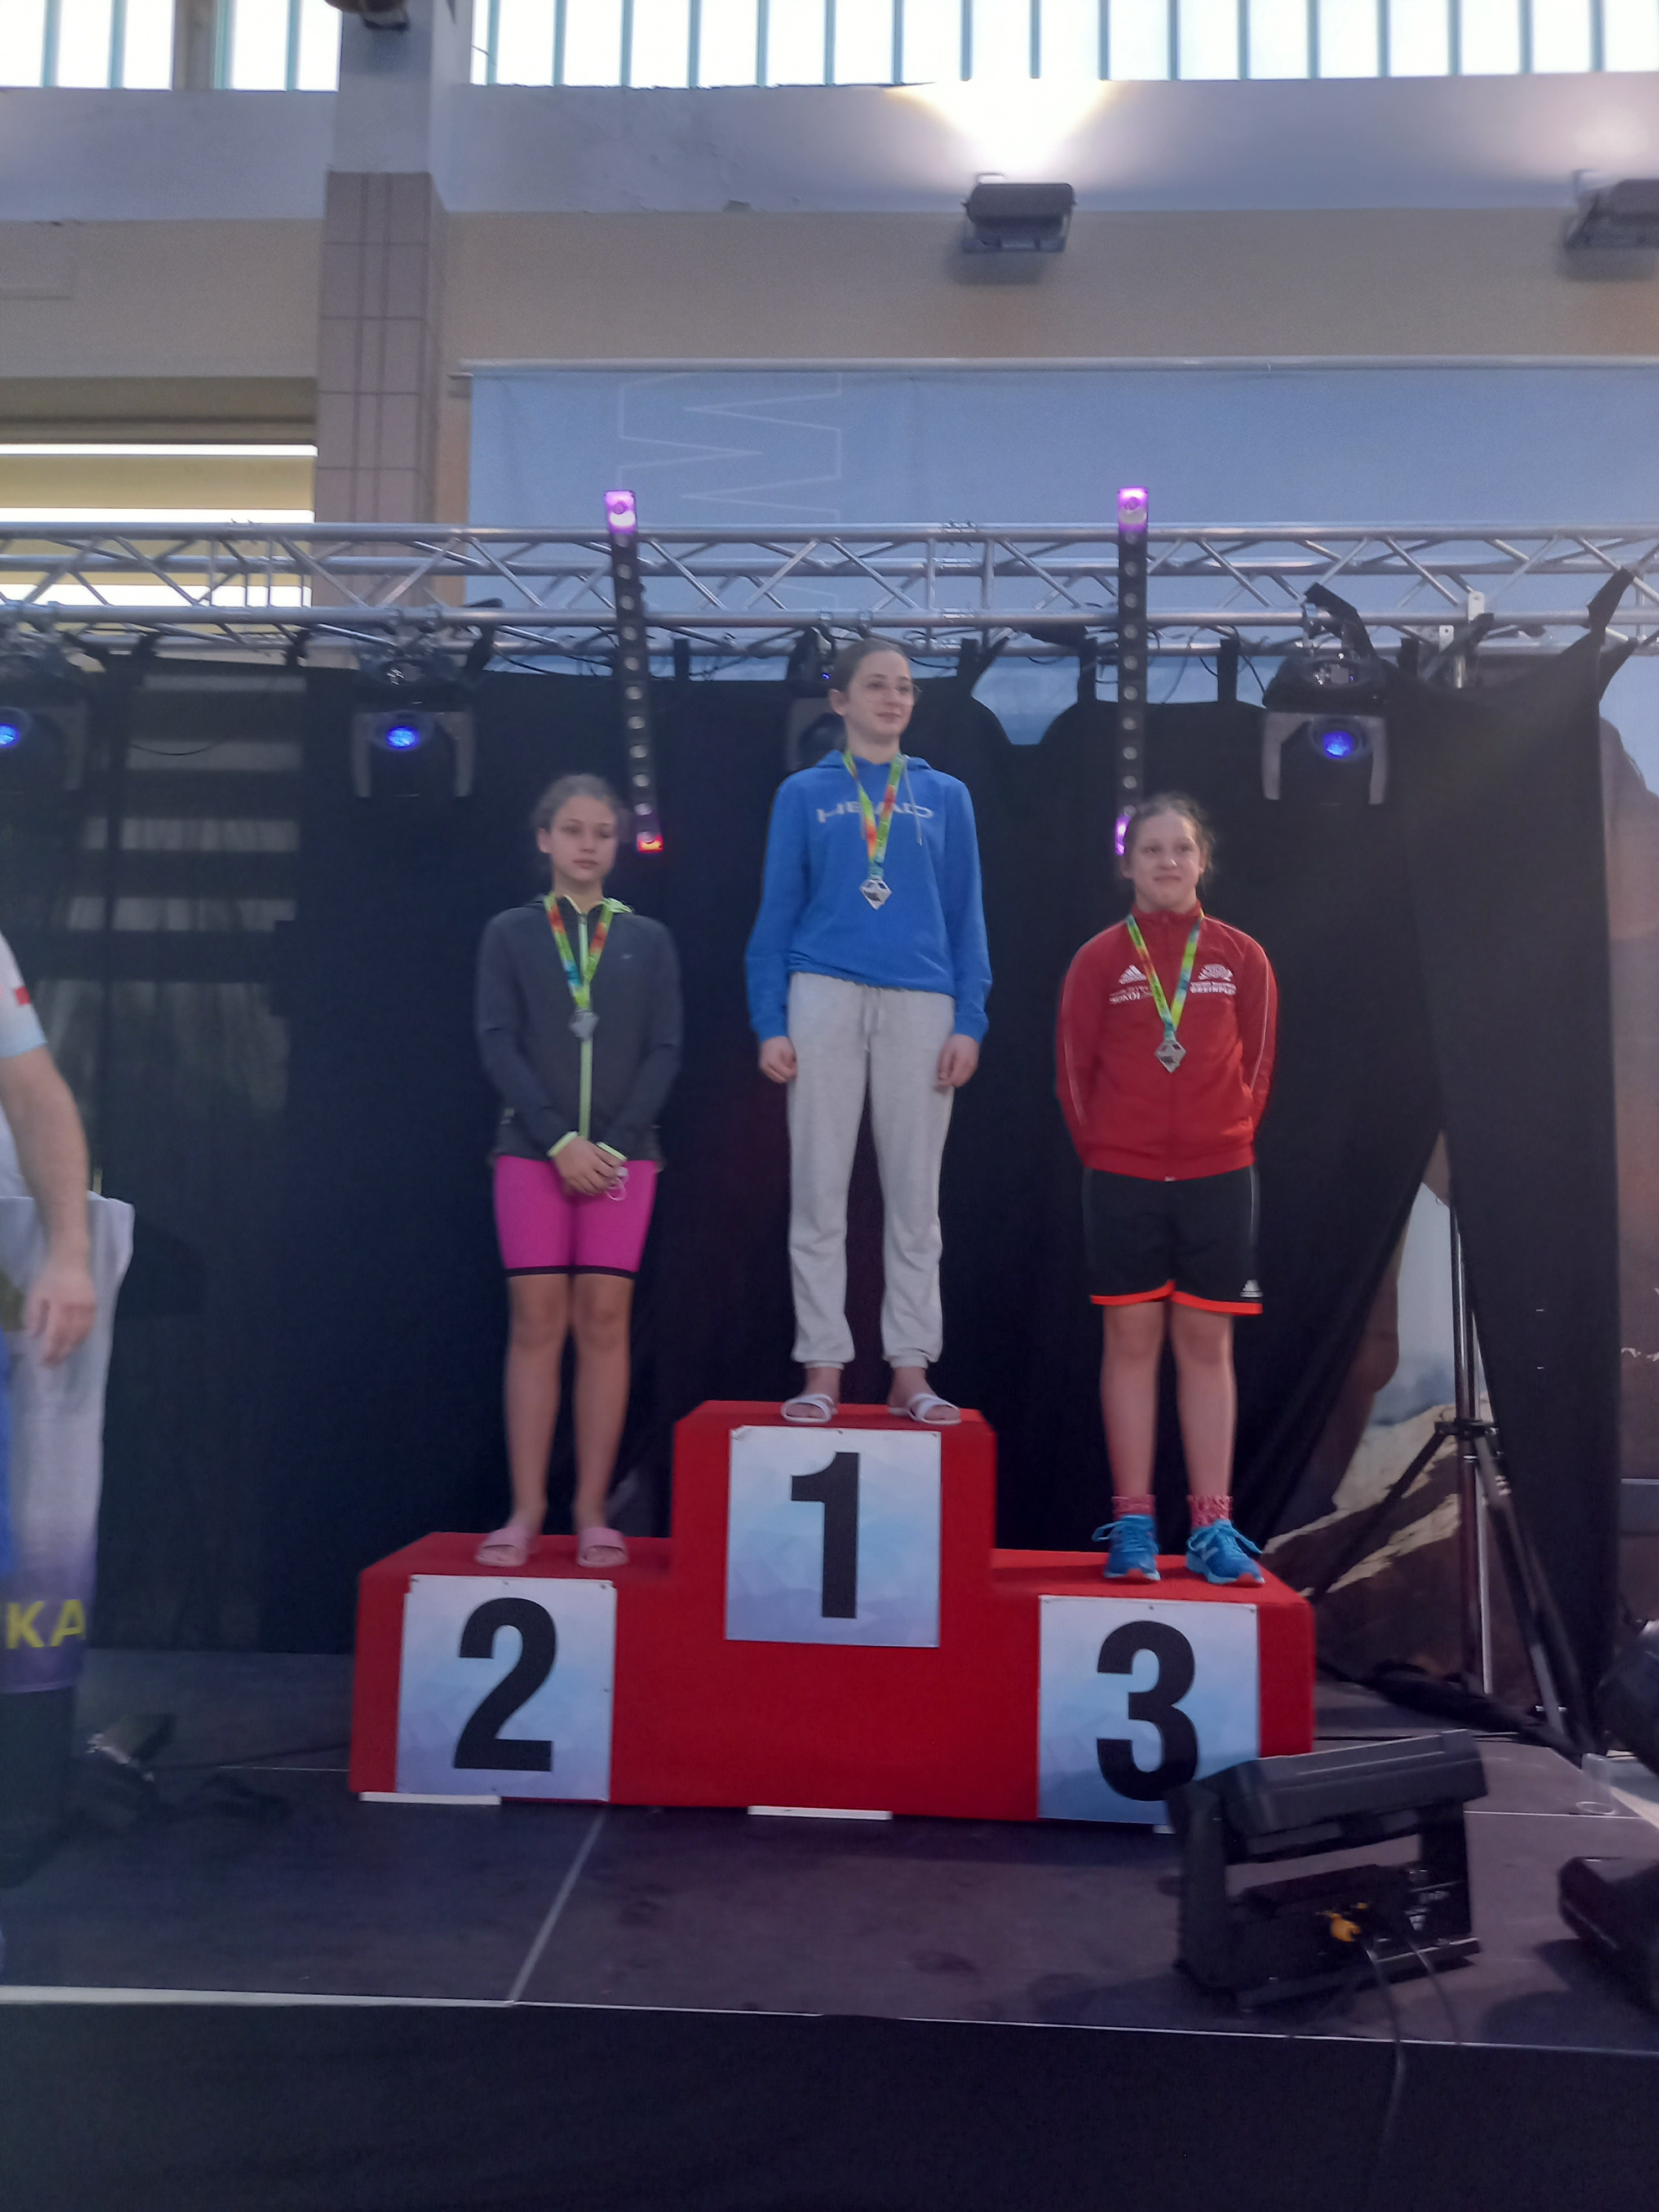 Podium, na którym stoi trzech medalistów. Na miejscu nr 2 (pierwsza z lewej) Karolina Klajmon.